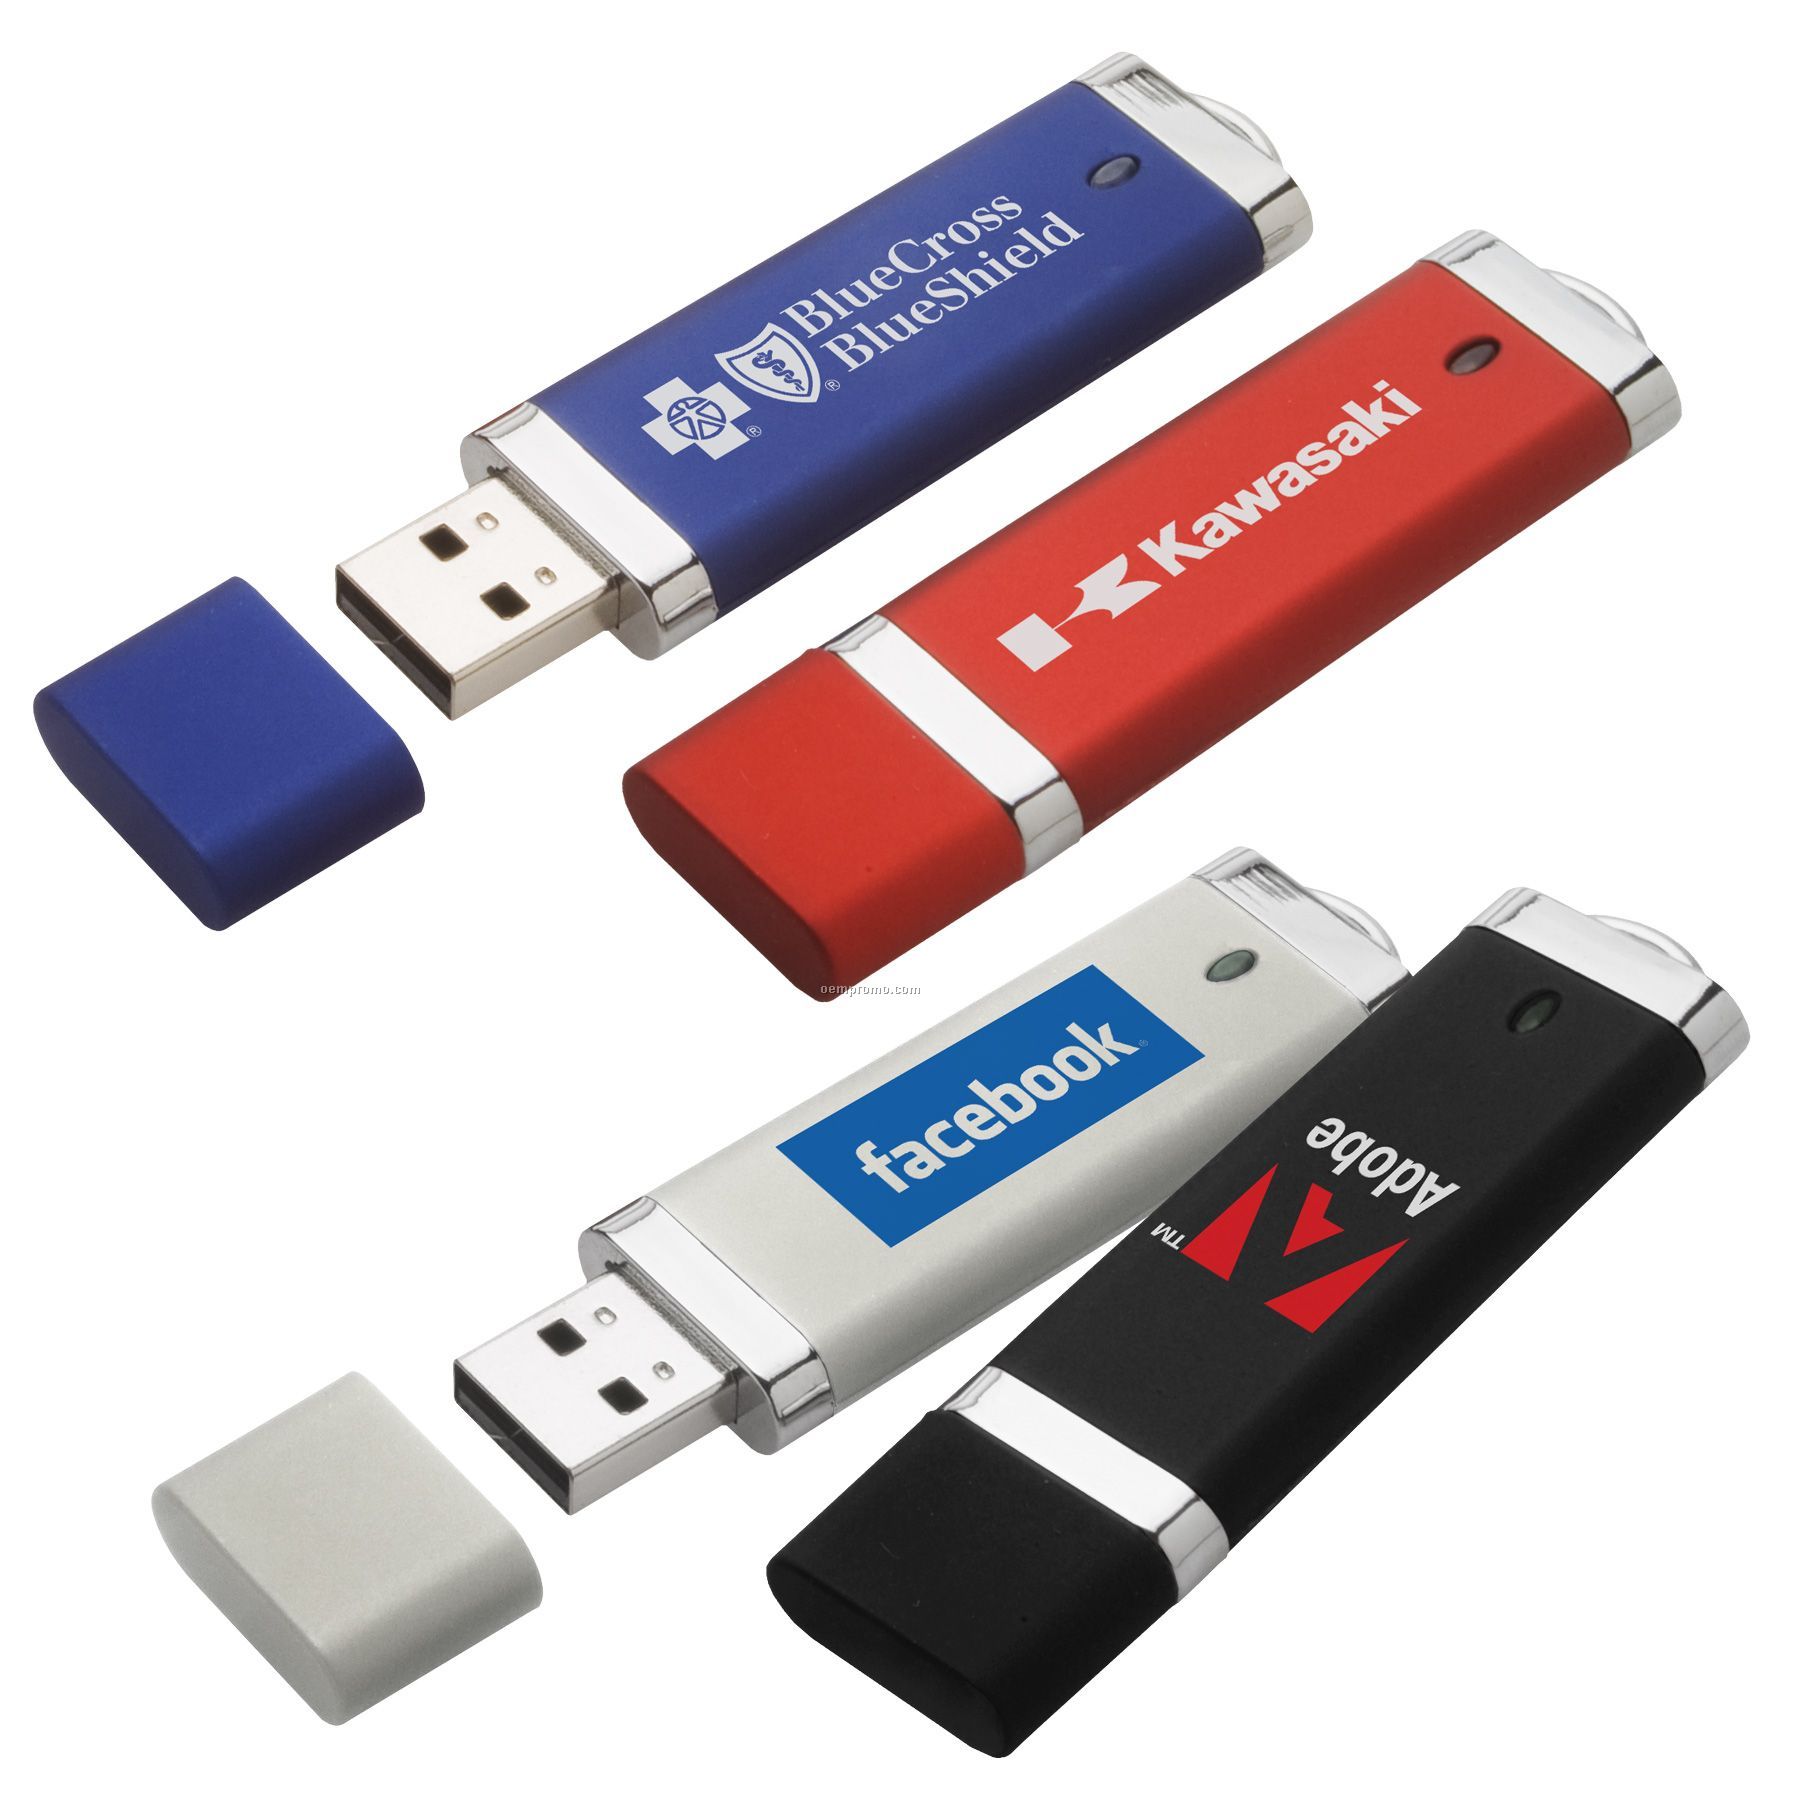 Anzi USB Flash Drive (8gb)